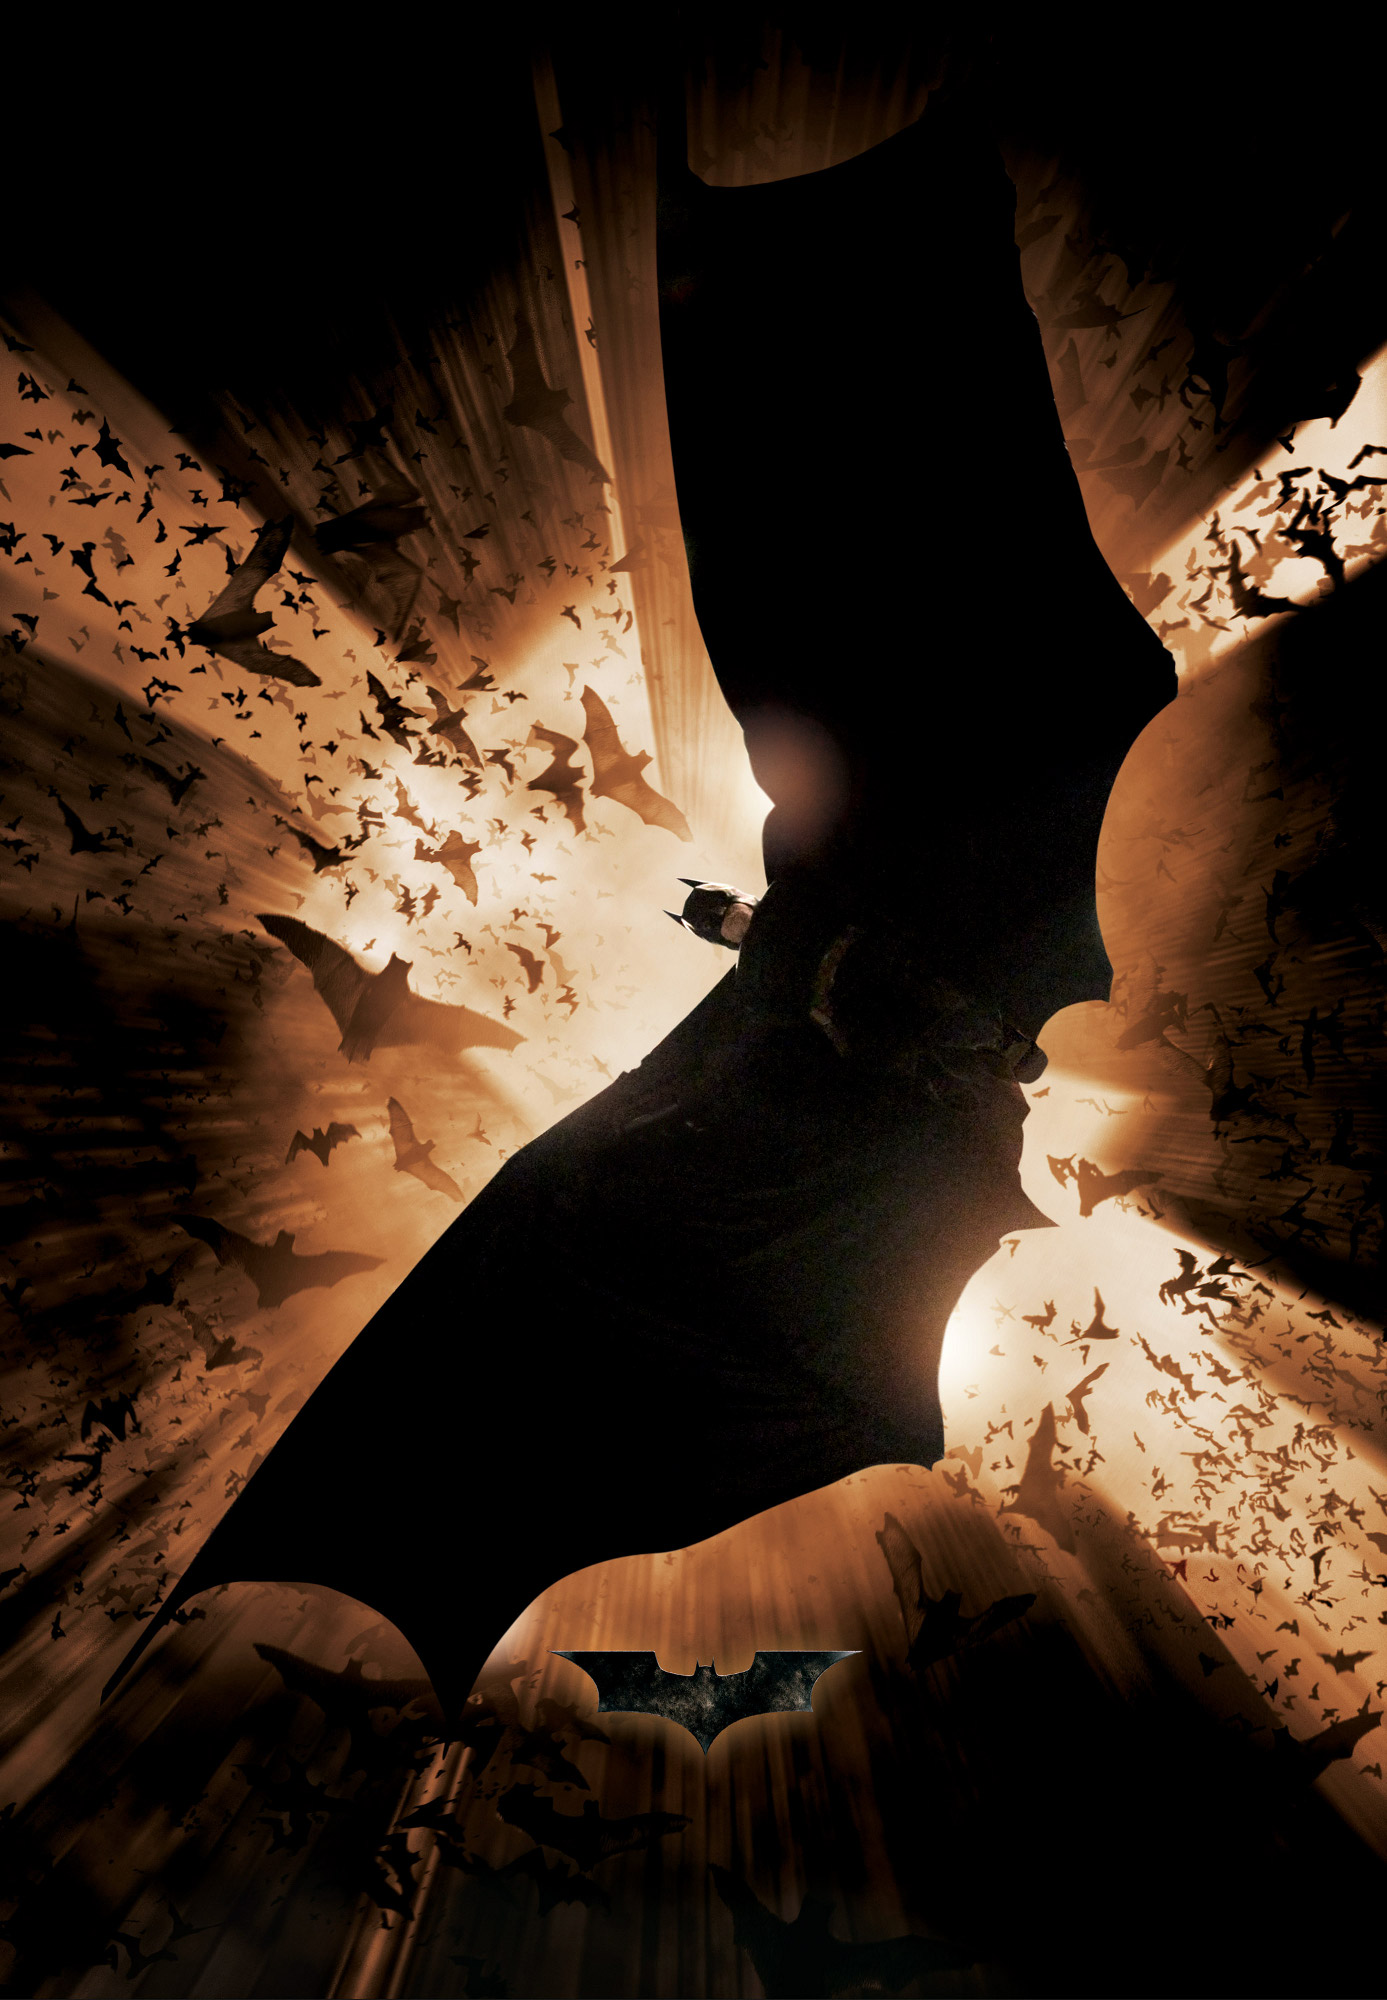 Batman Begins Wallpaper